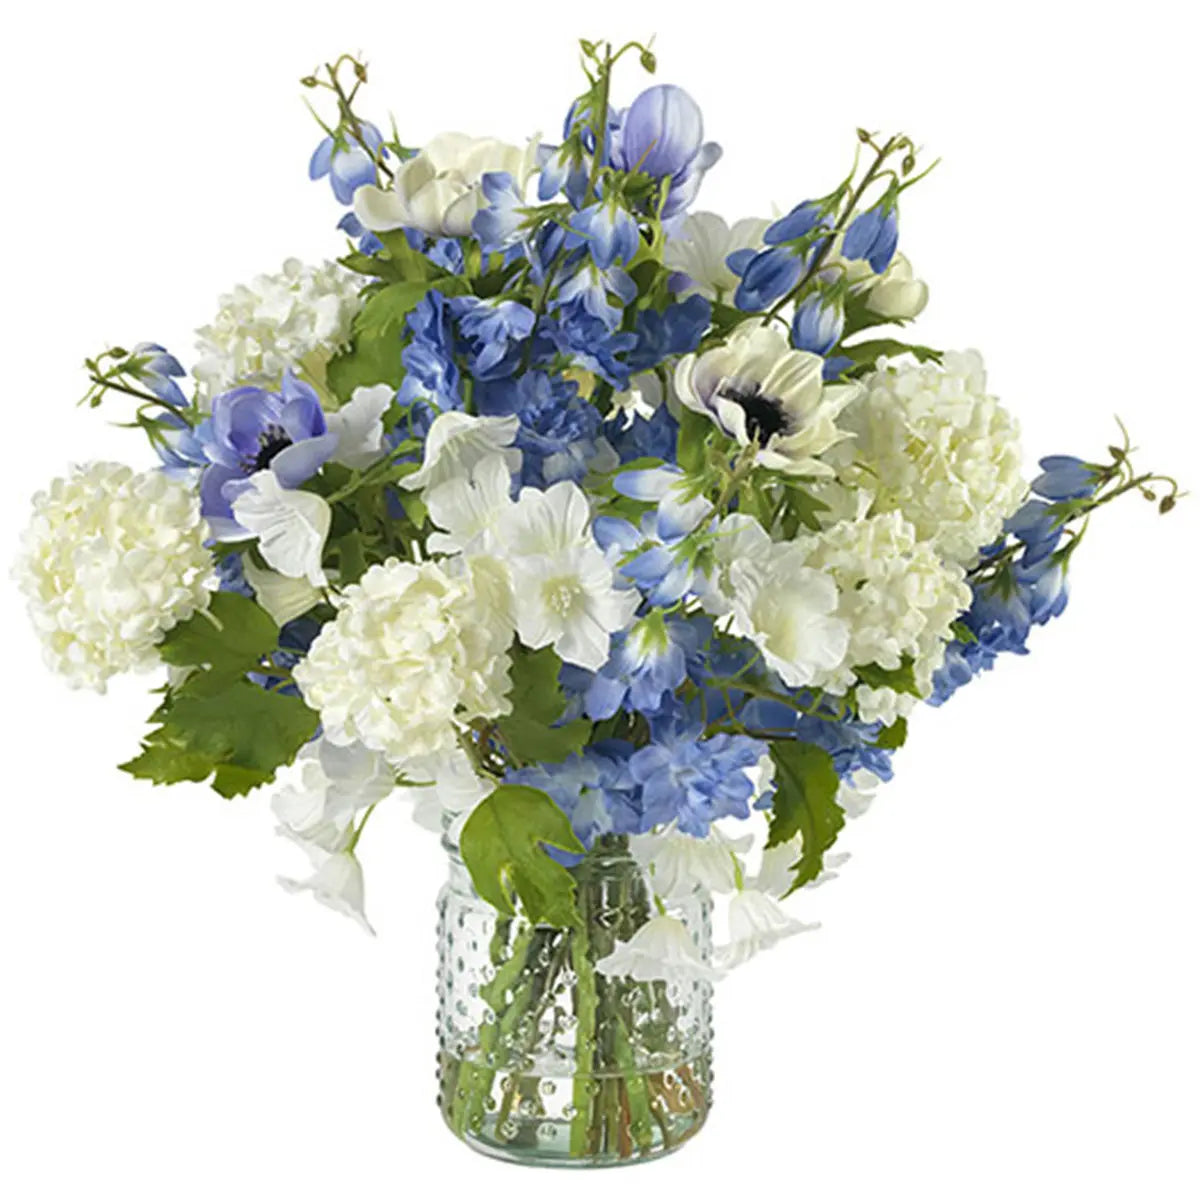 Diane James Blooms Blue Delphinium and Anemones in Vase